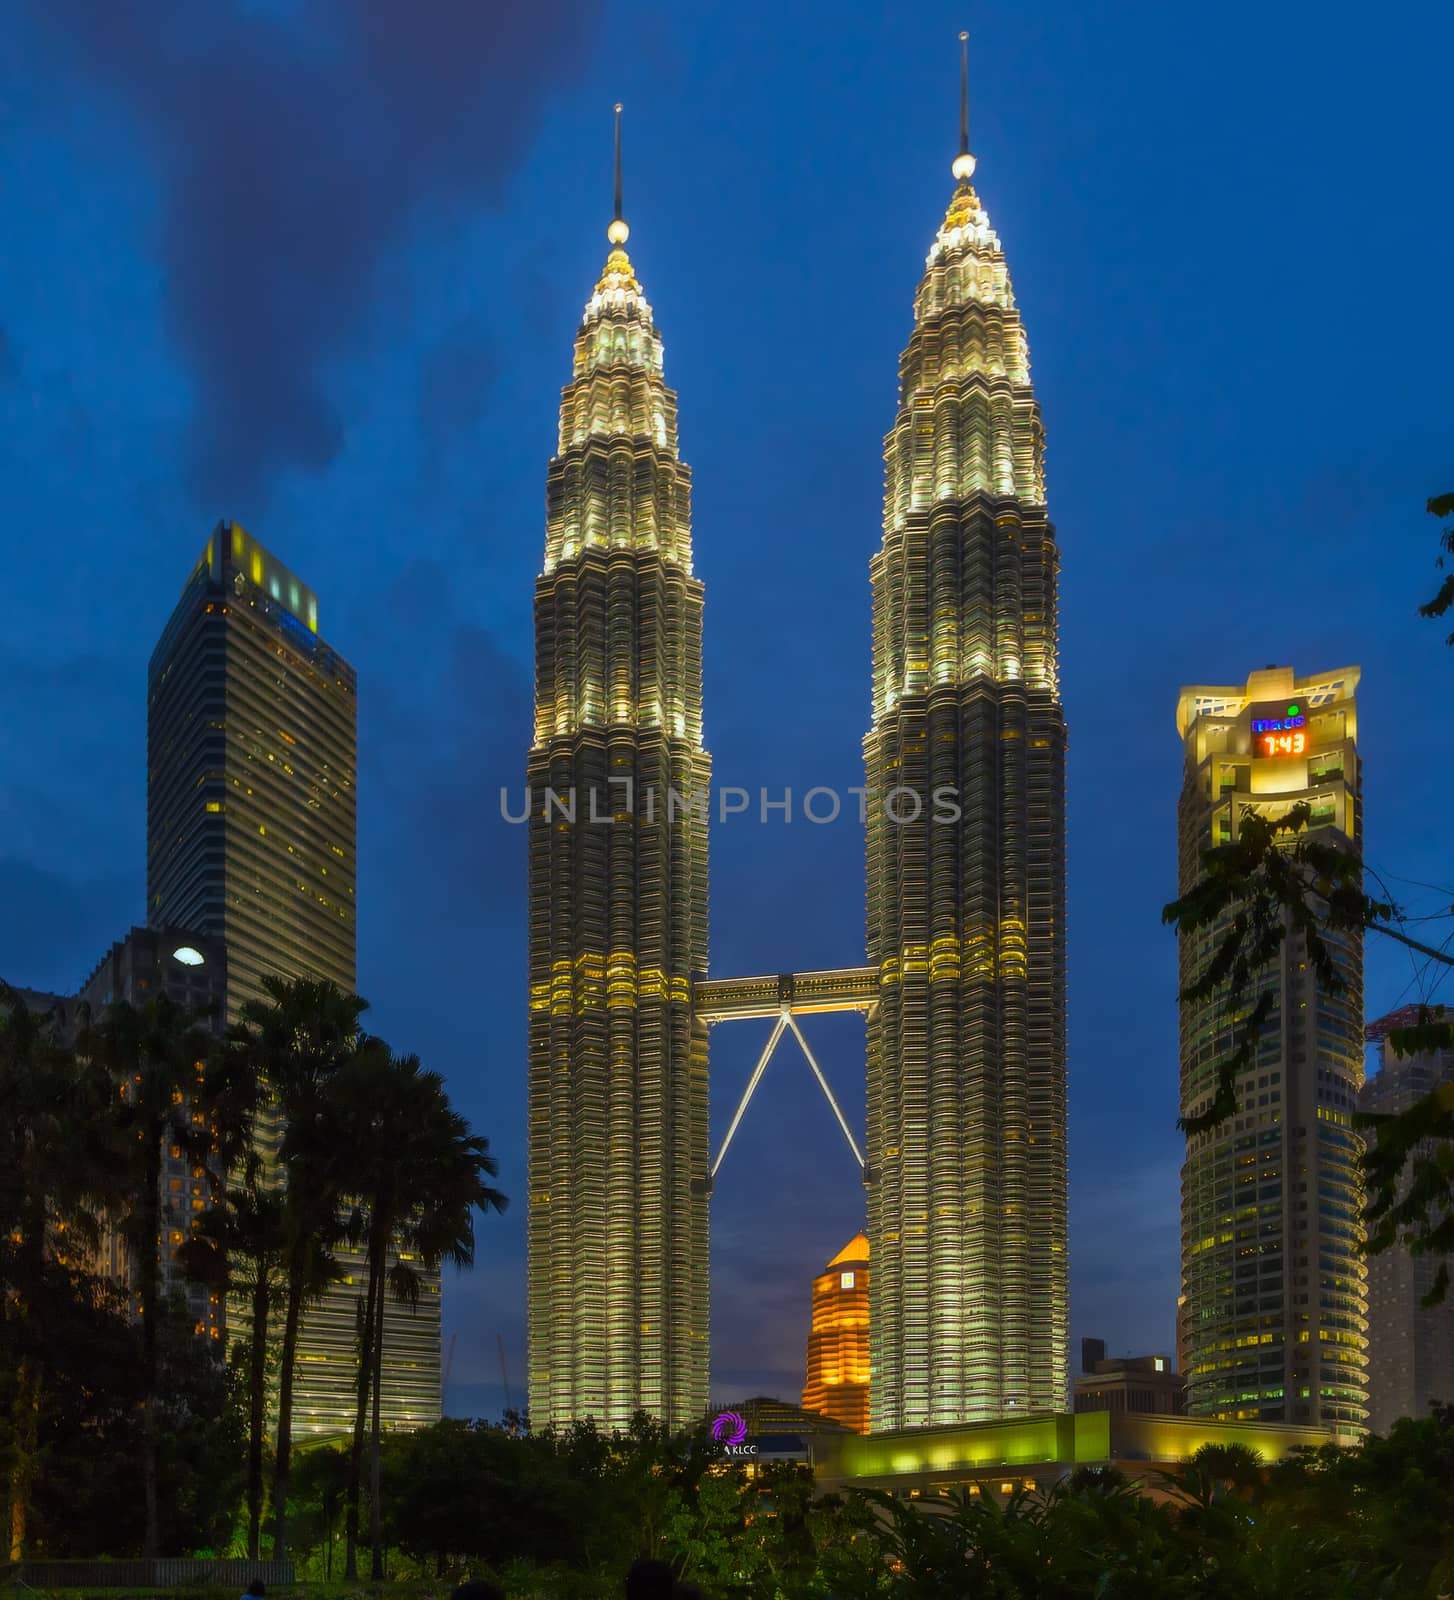 KUALA LUMPUR - FEBRUARY 19: The Petronas Twin Towers as seen from the ground on February 19, 2015, in Kuala Lumpur, Malaysia